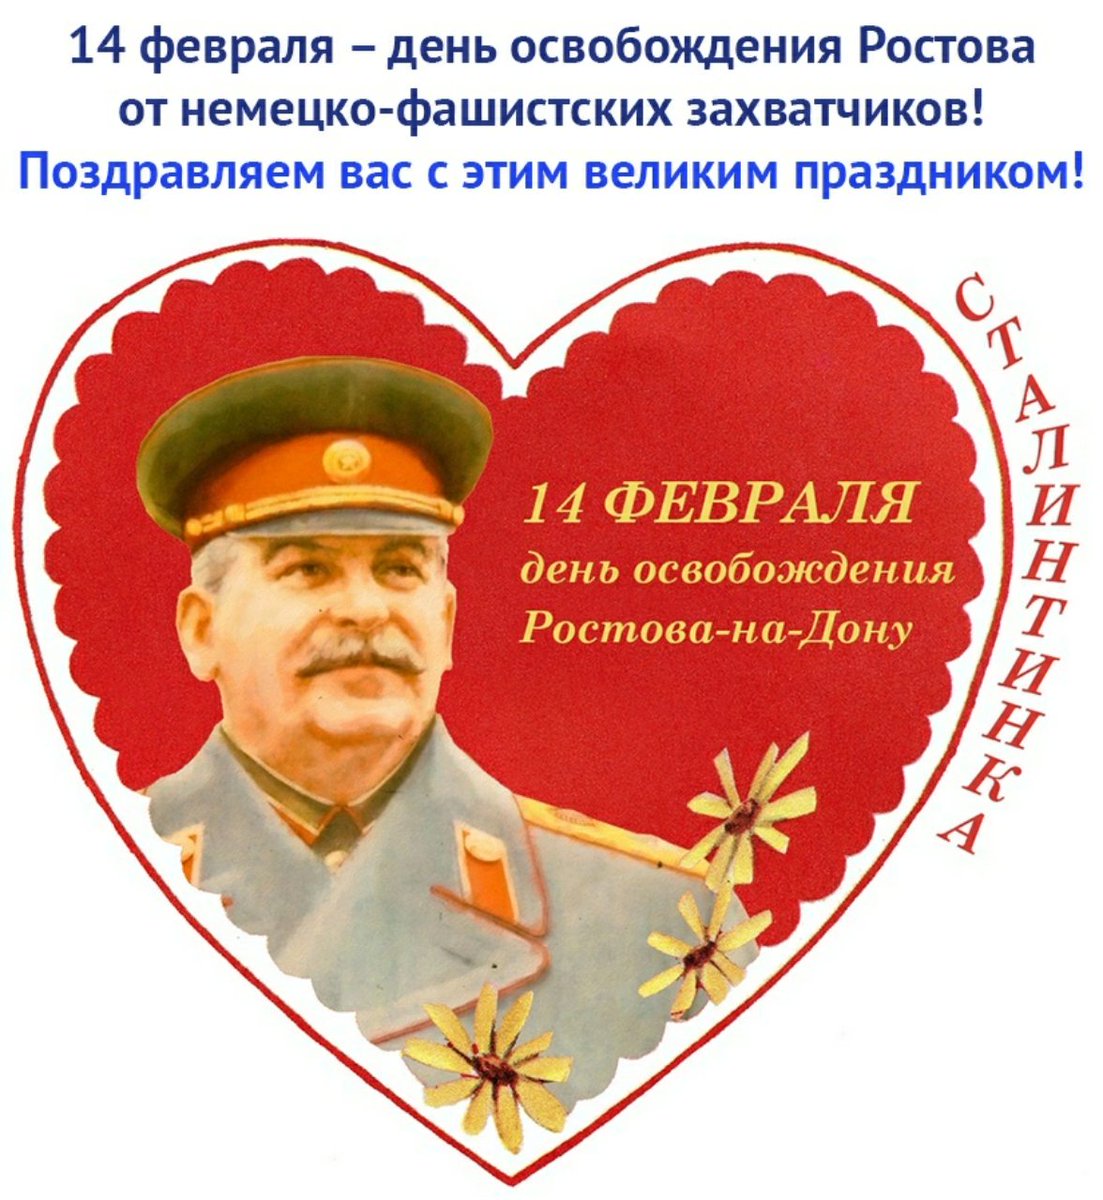 Сталинтинка 14 февраля. 14 Февраля день освобождения. Валентинка со Сталиным. 14 Февр день освобождения. Коммунистическая валентинка.